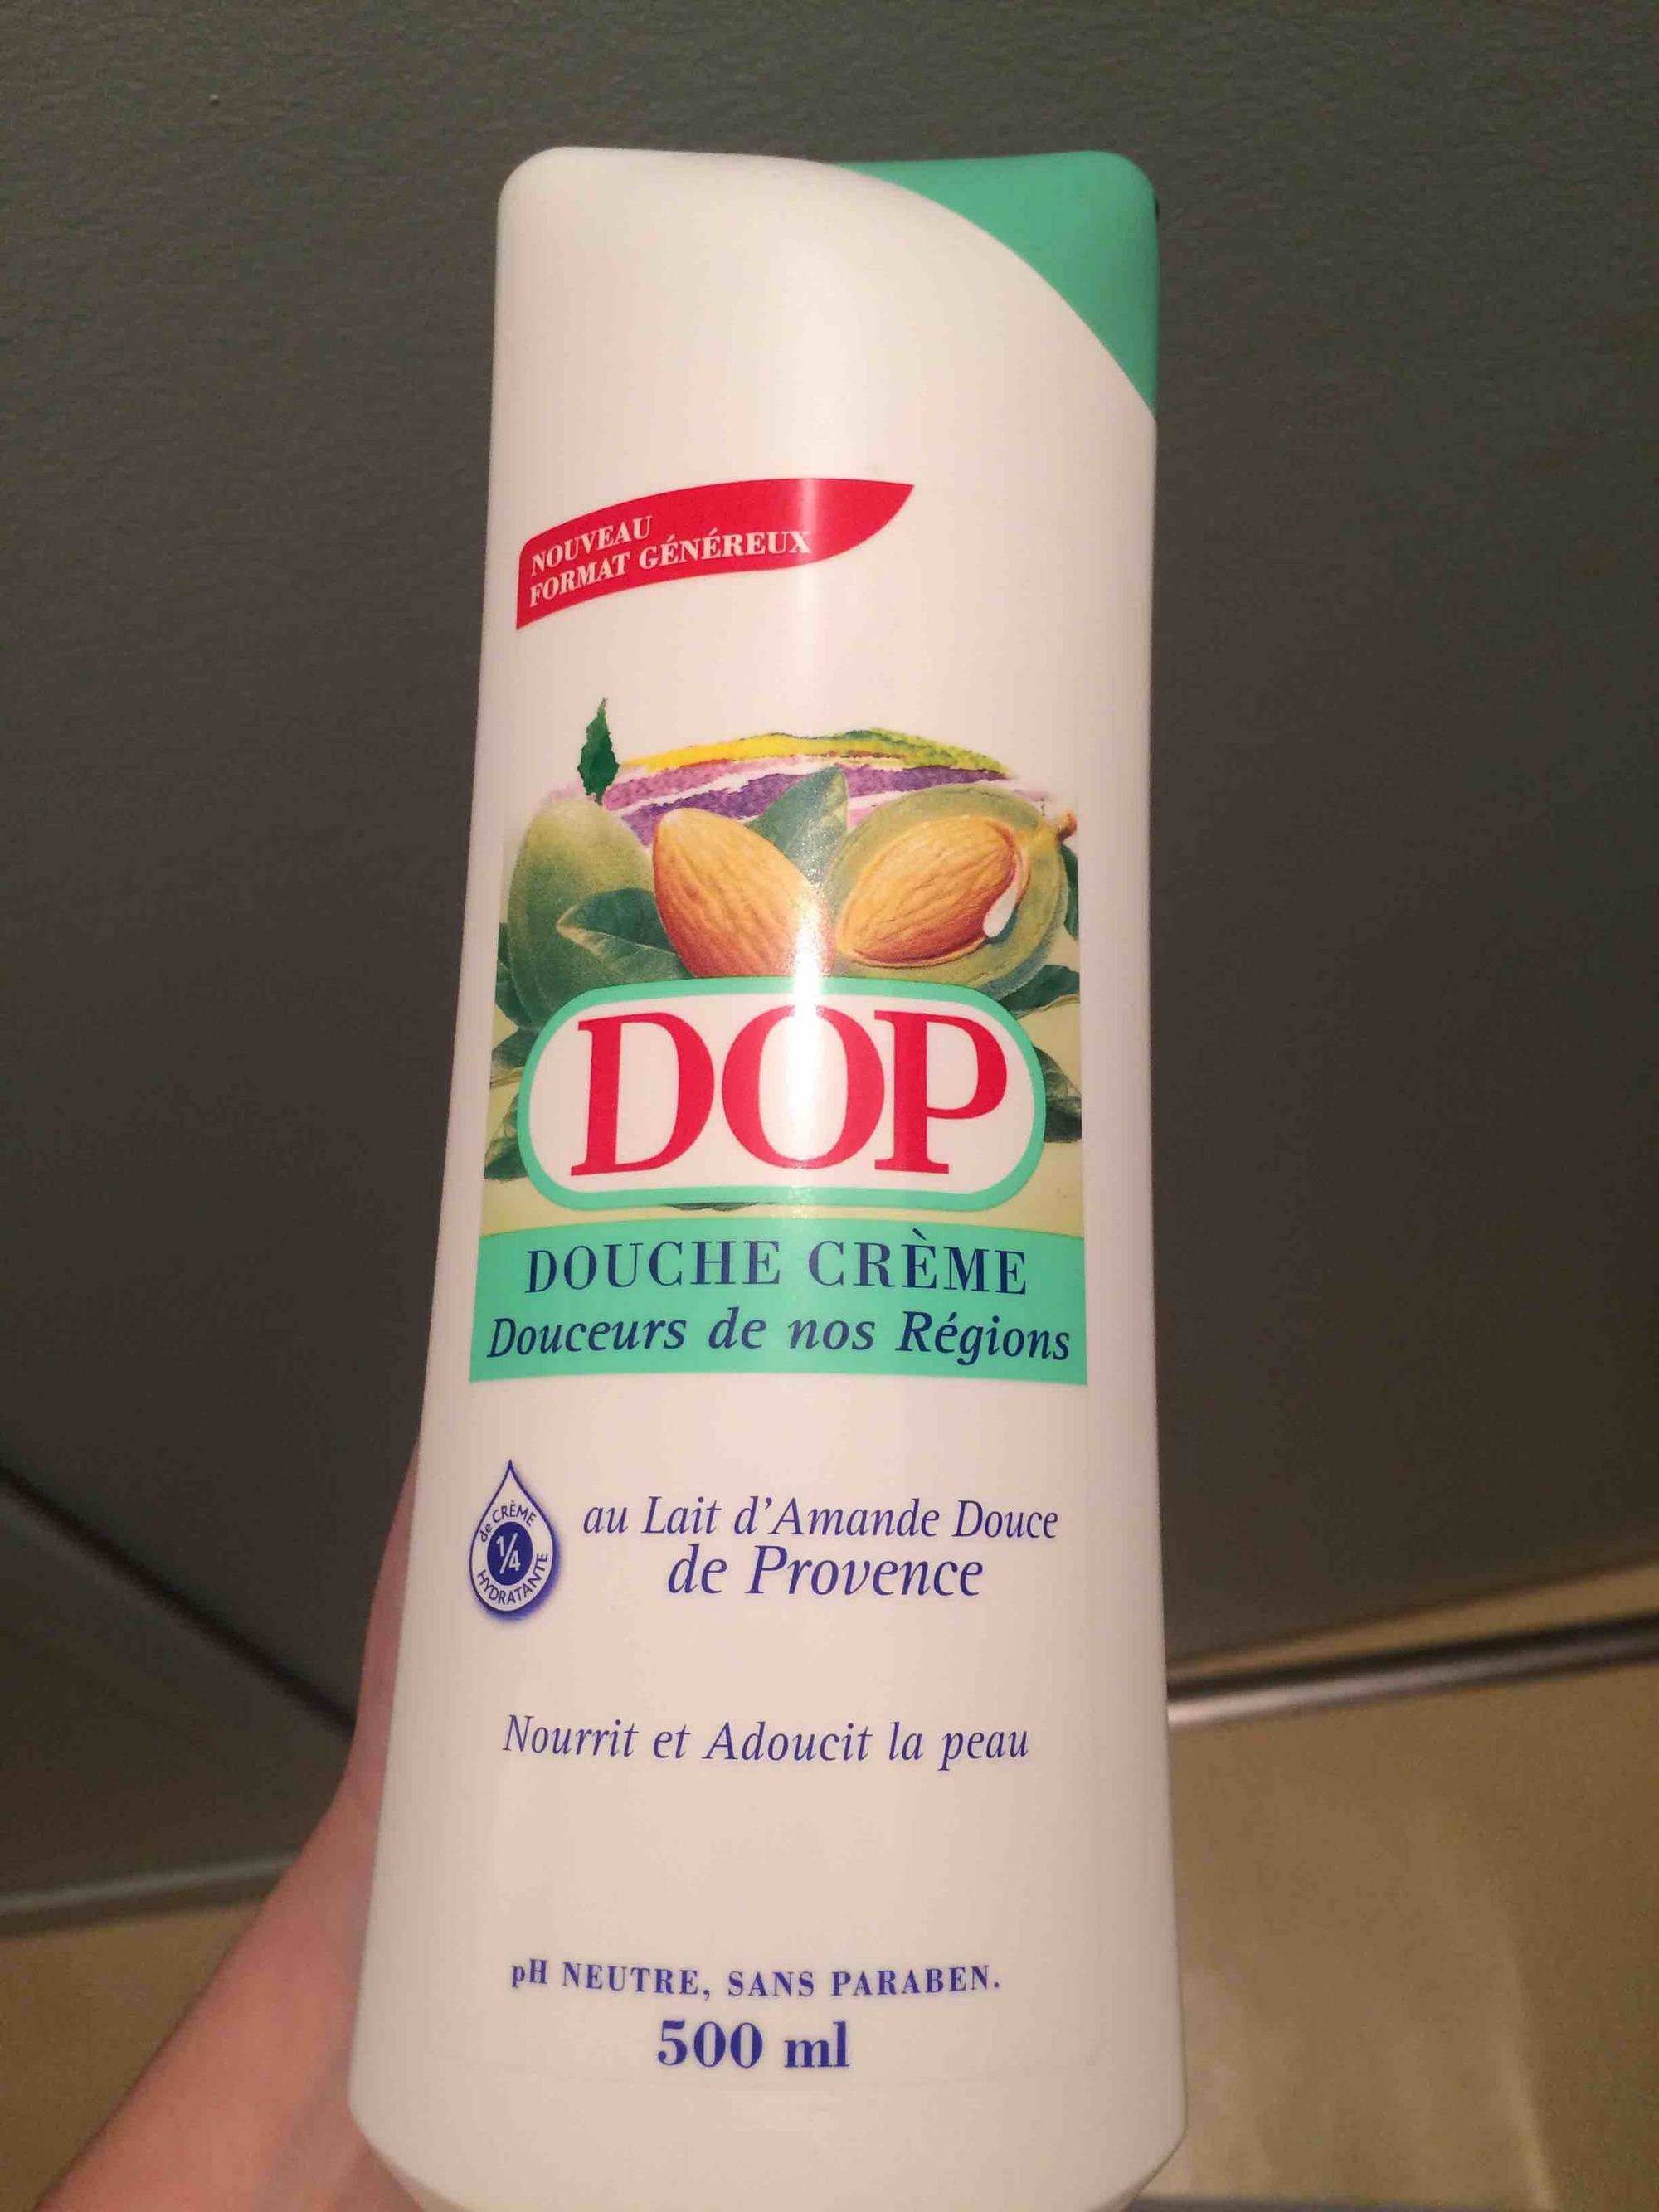 DOP - Douche crème au lait d'amande douce